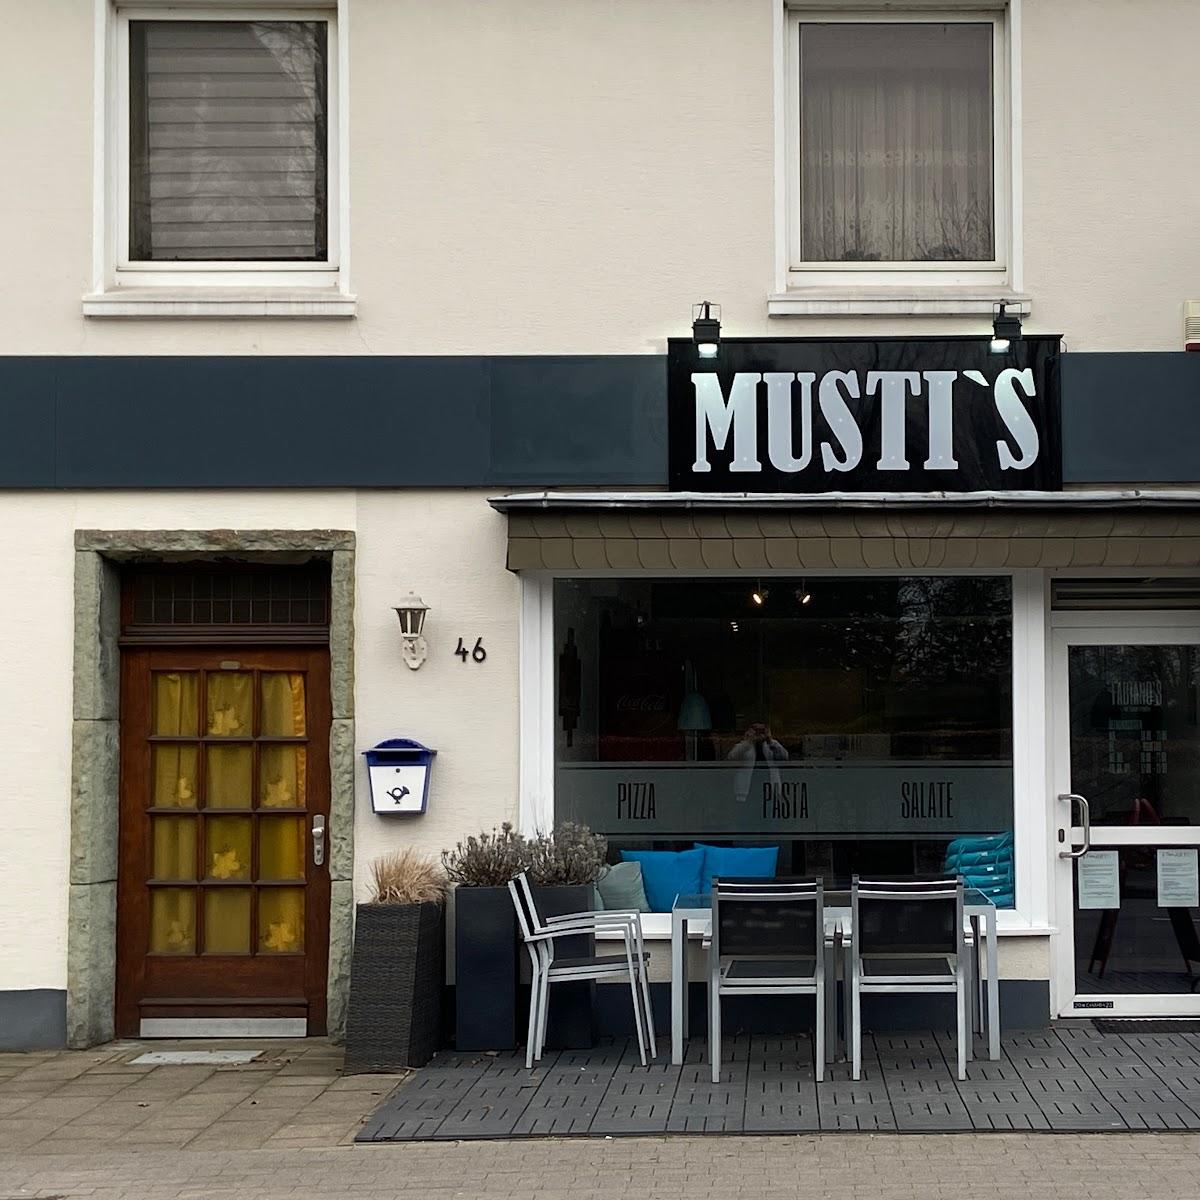 Restaurant "Musti